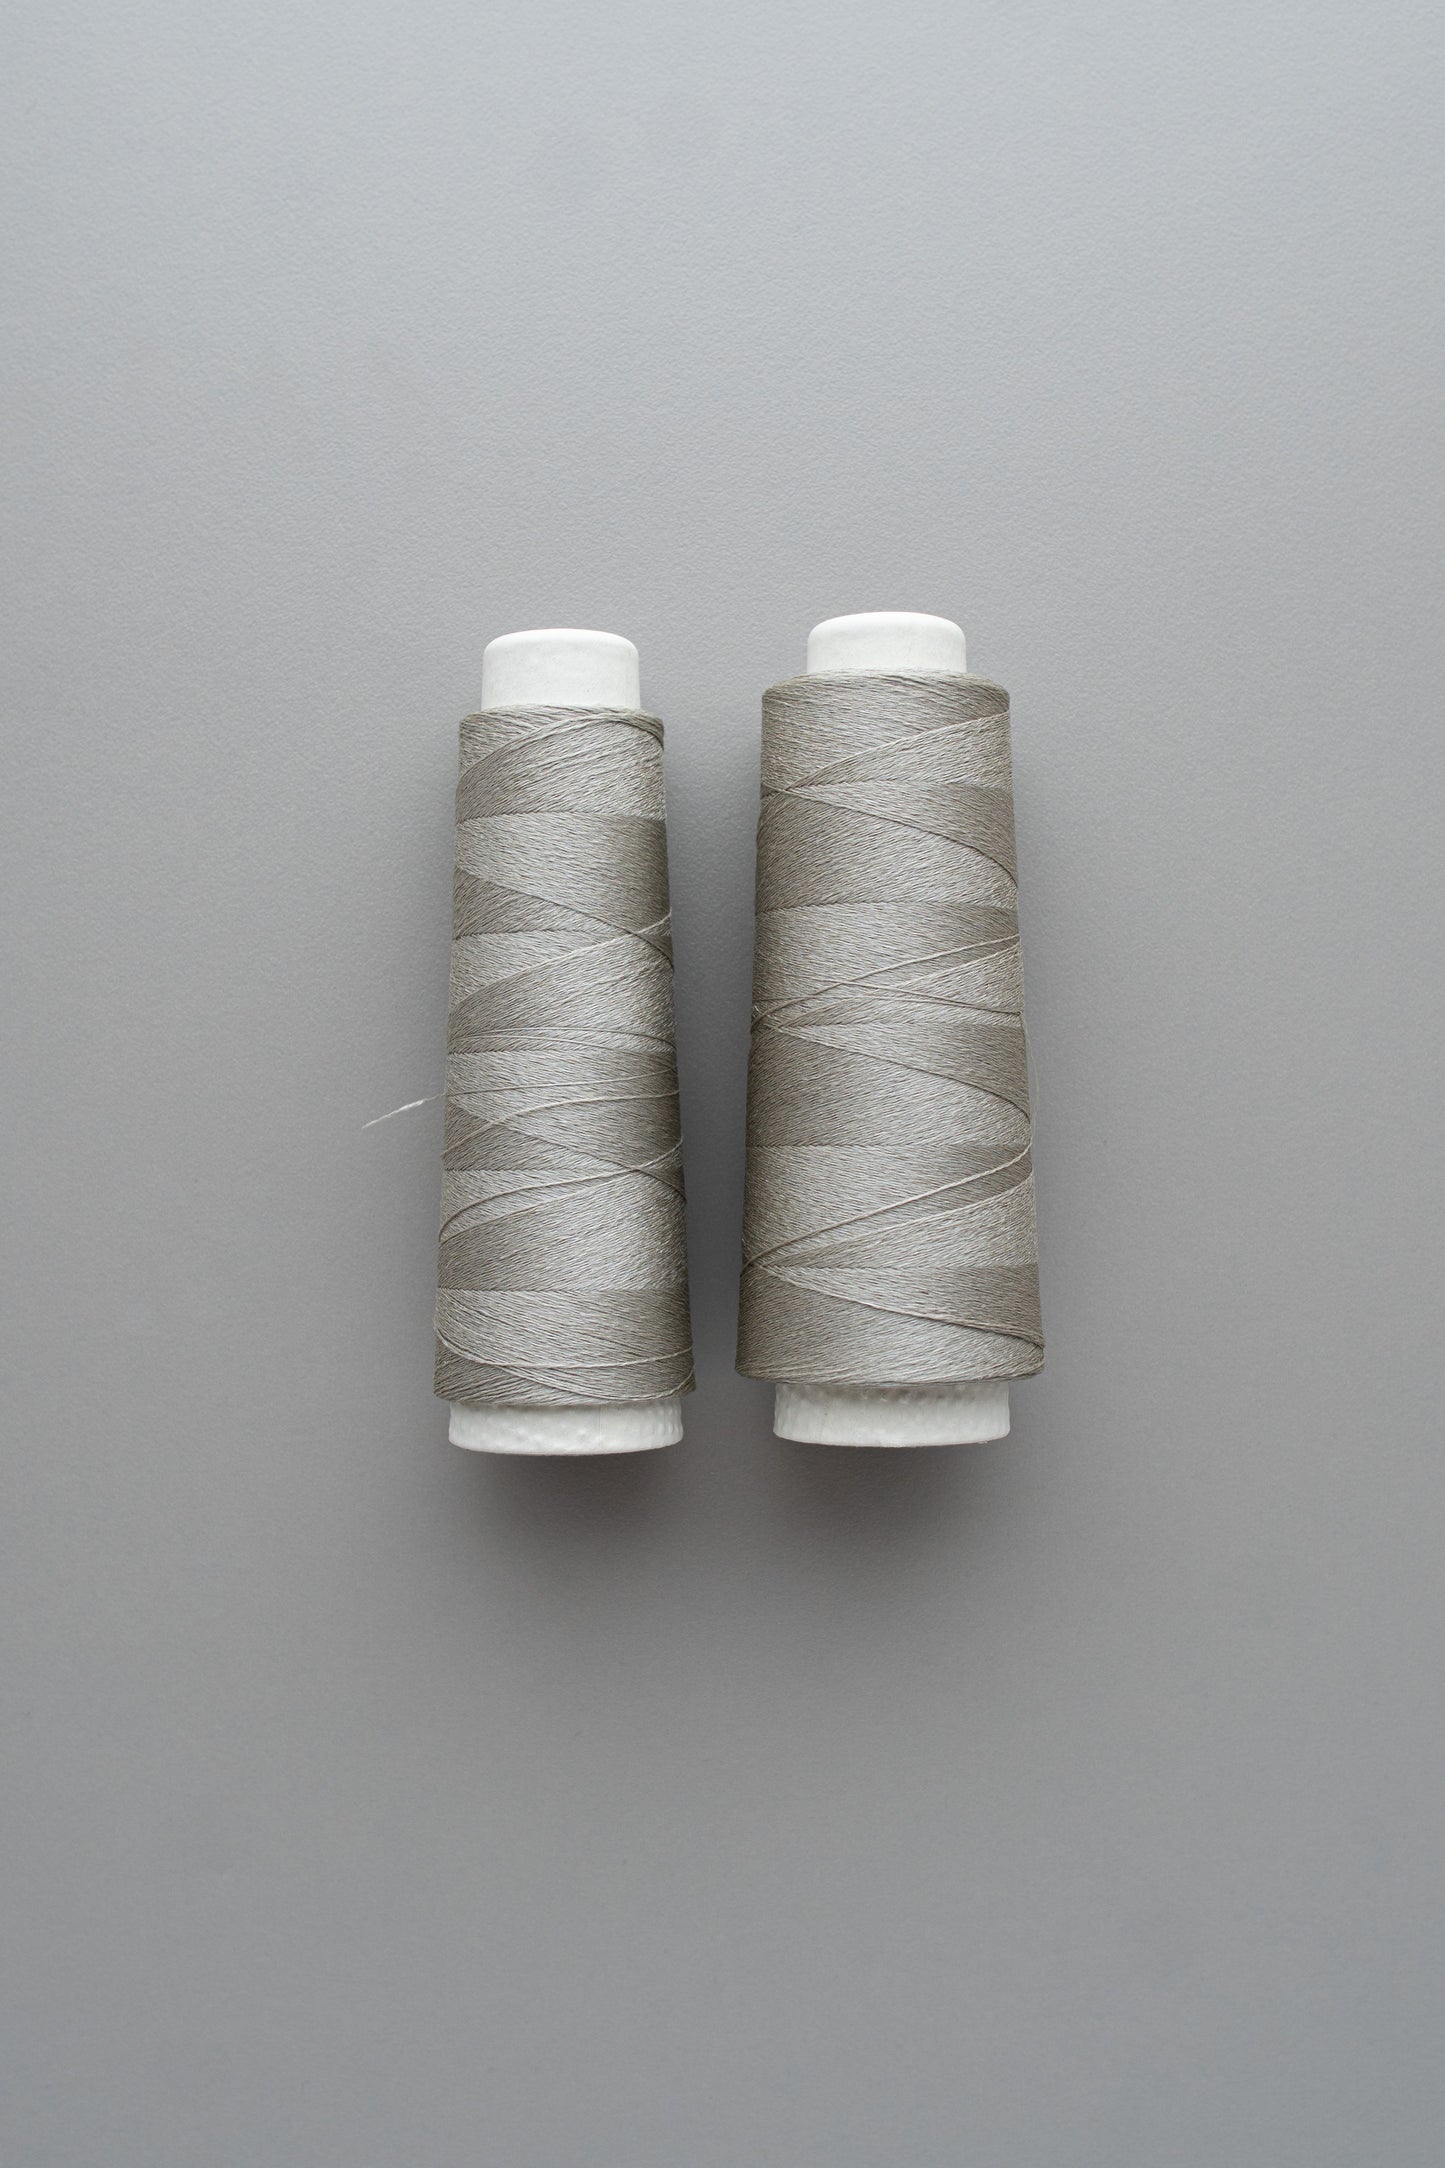 ワイルドシルク糸コーン巻き 10g / 25g | 銀灰色